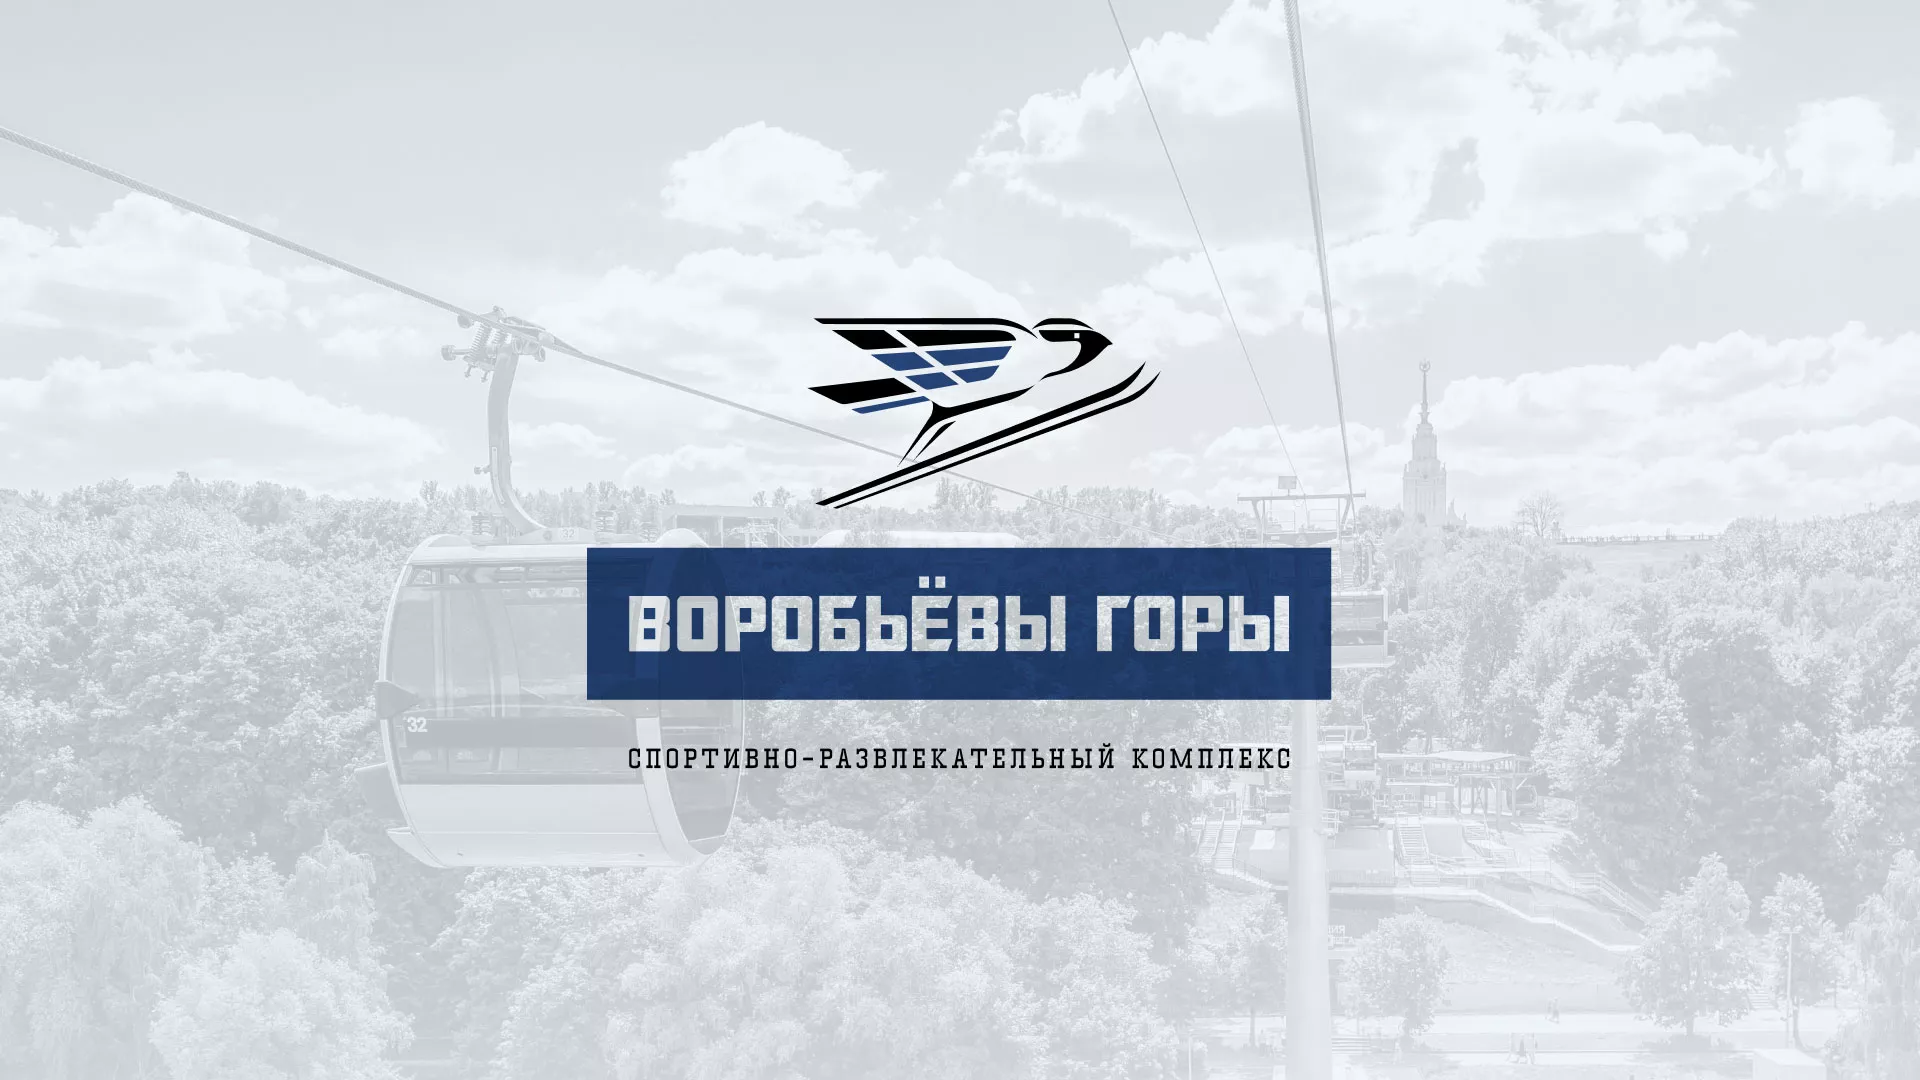 Разработка сайта в Жуковском для спортивно-развлекательного комплекса «Воробьёвы горы»